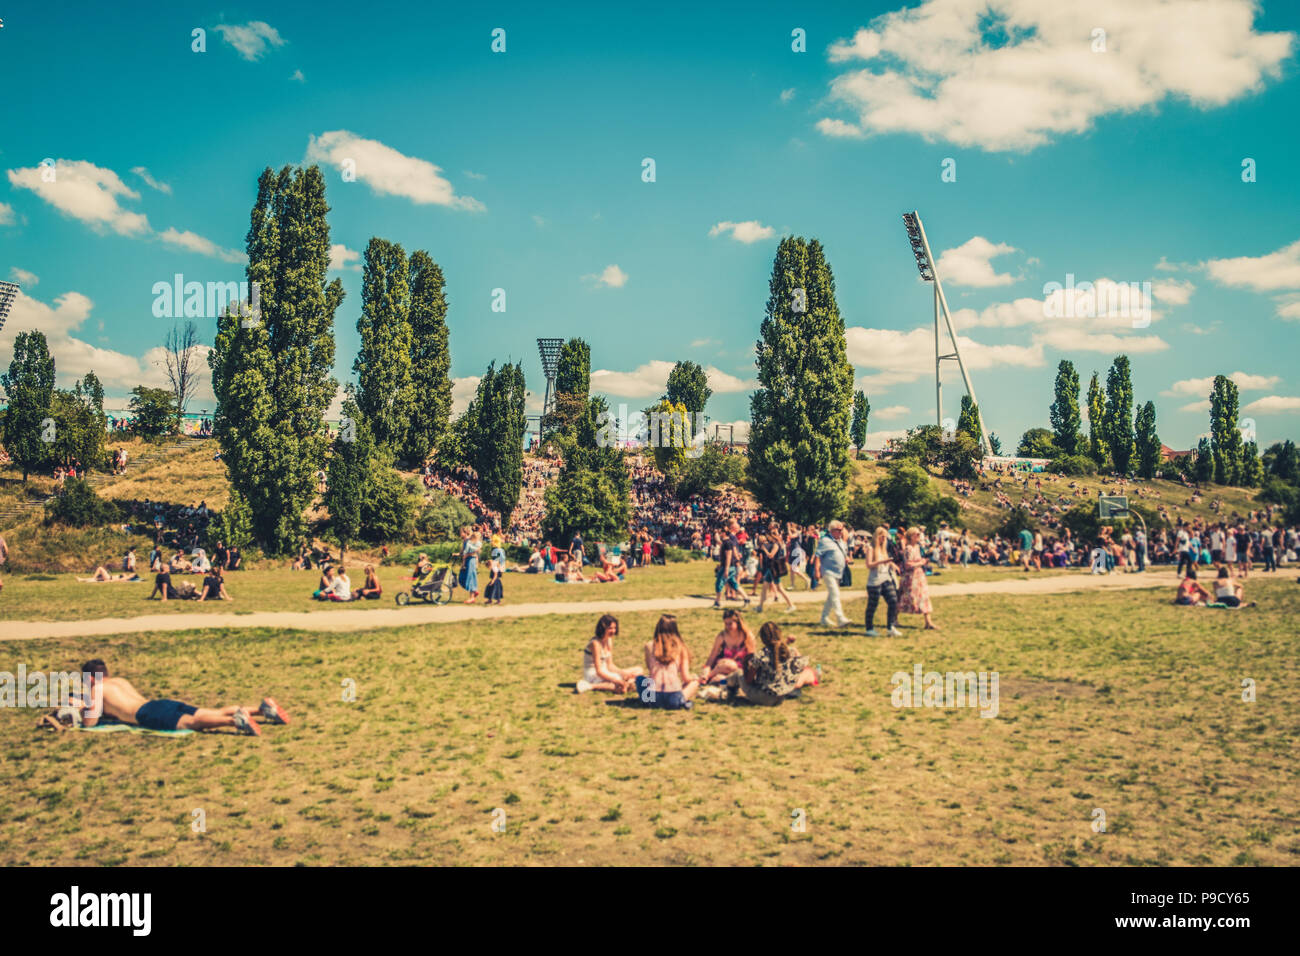 Cityscape blur concetto - Persone godendo di giorno d'estate e di sole sul prato in affollato parco (Mauerpark) in Berlin City - Foto Stock